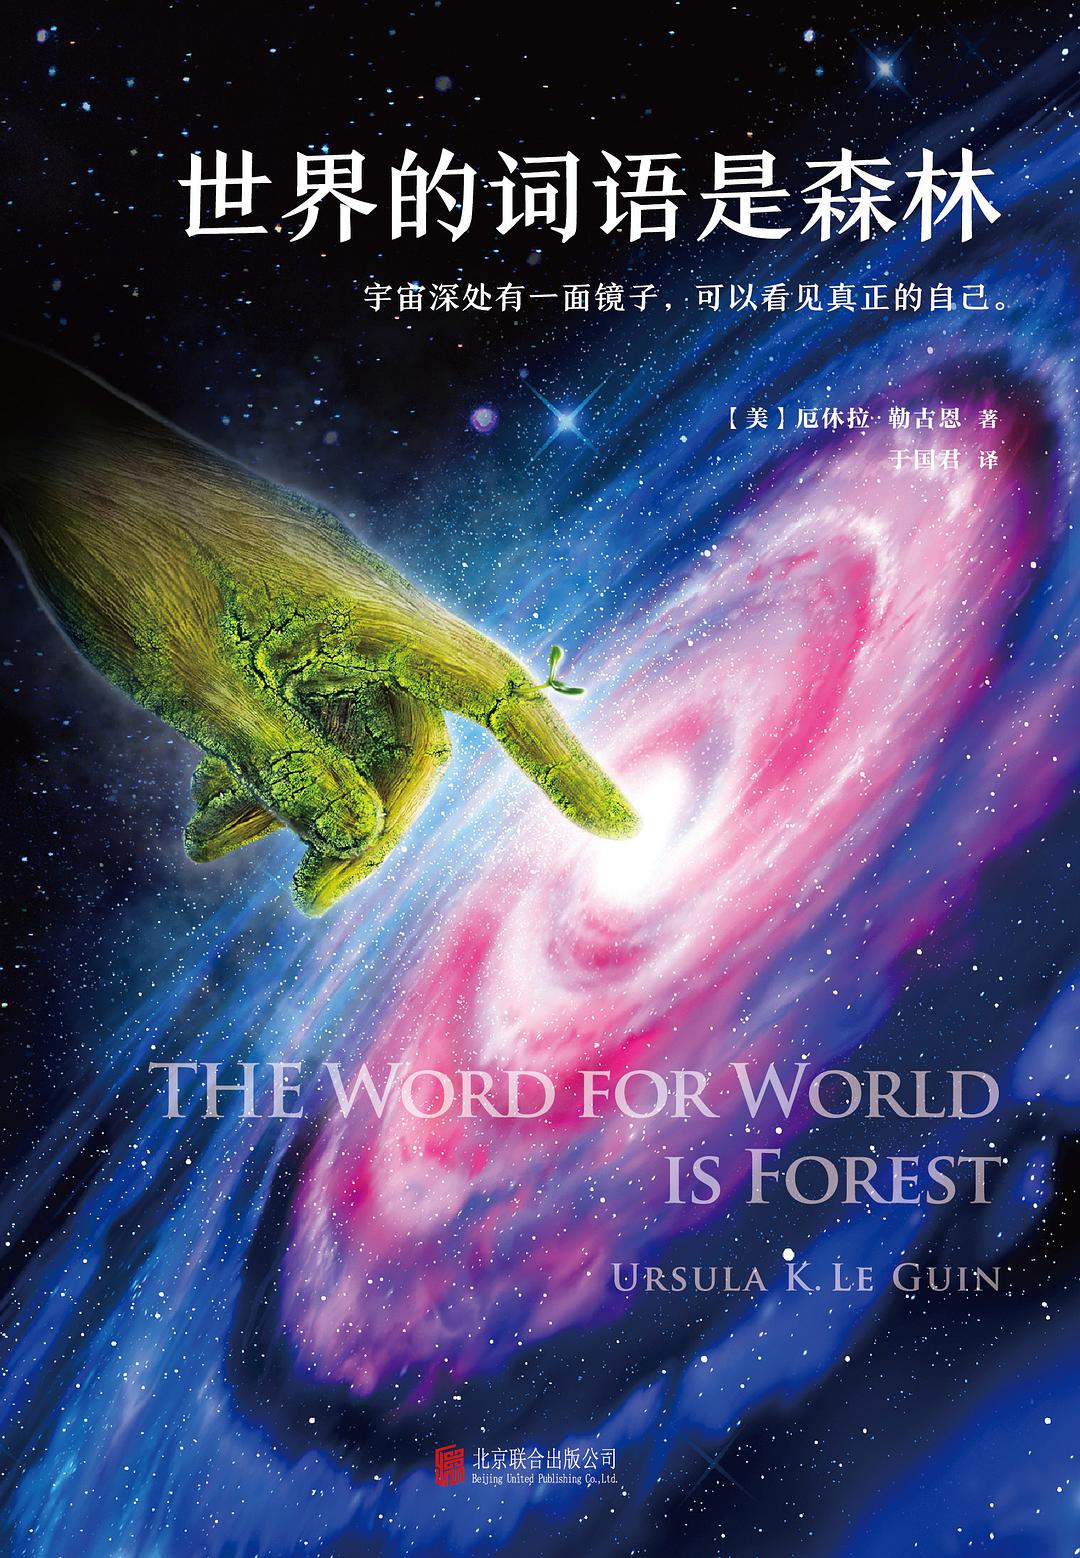 世界的词语是森林 (Chinese language, 2017, 北京联合出版公司)